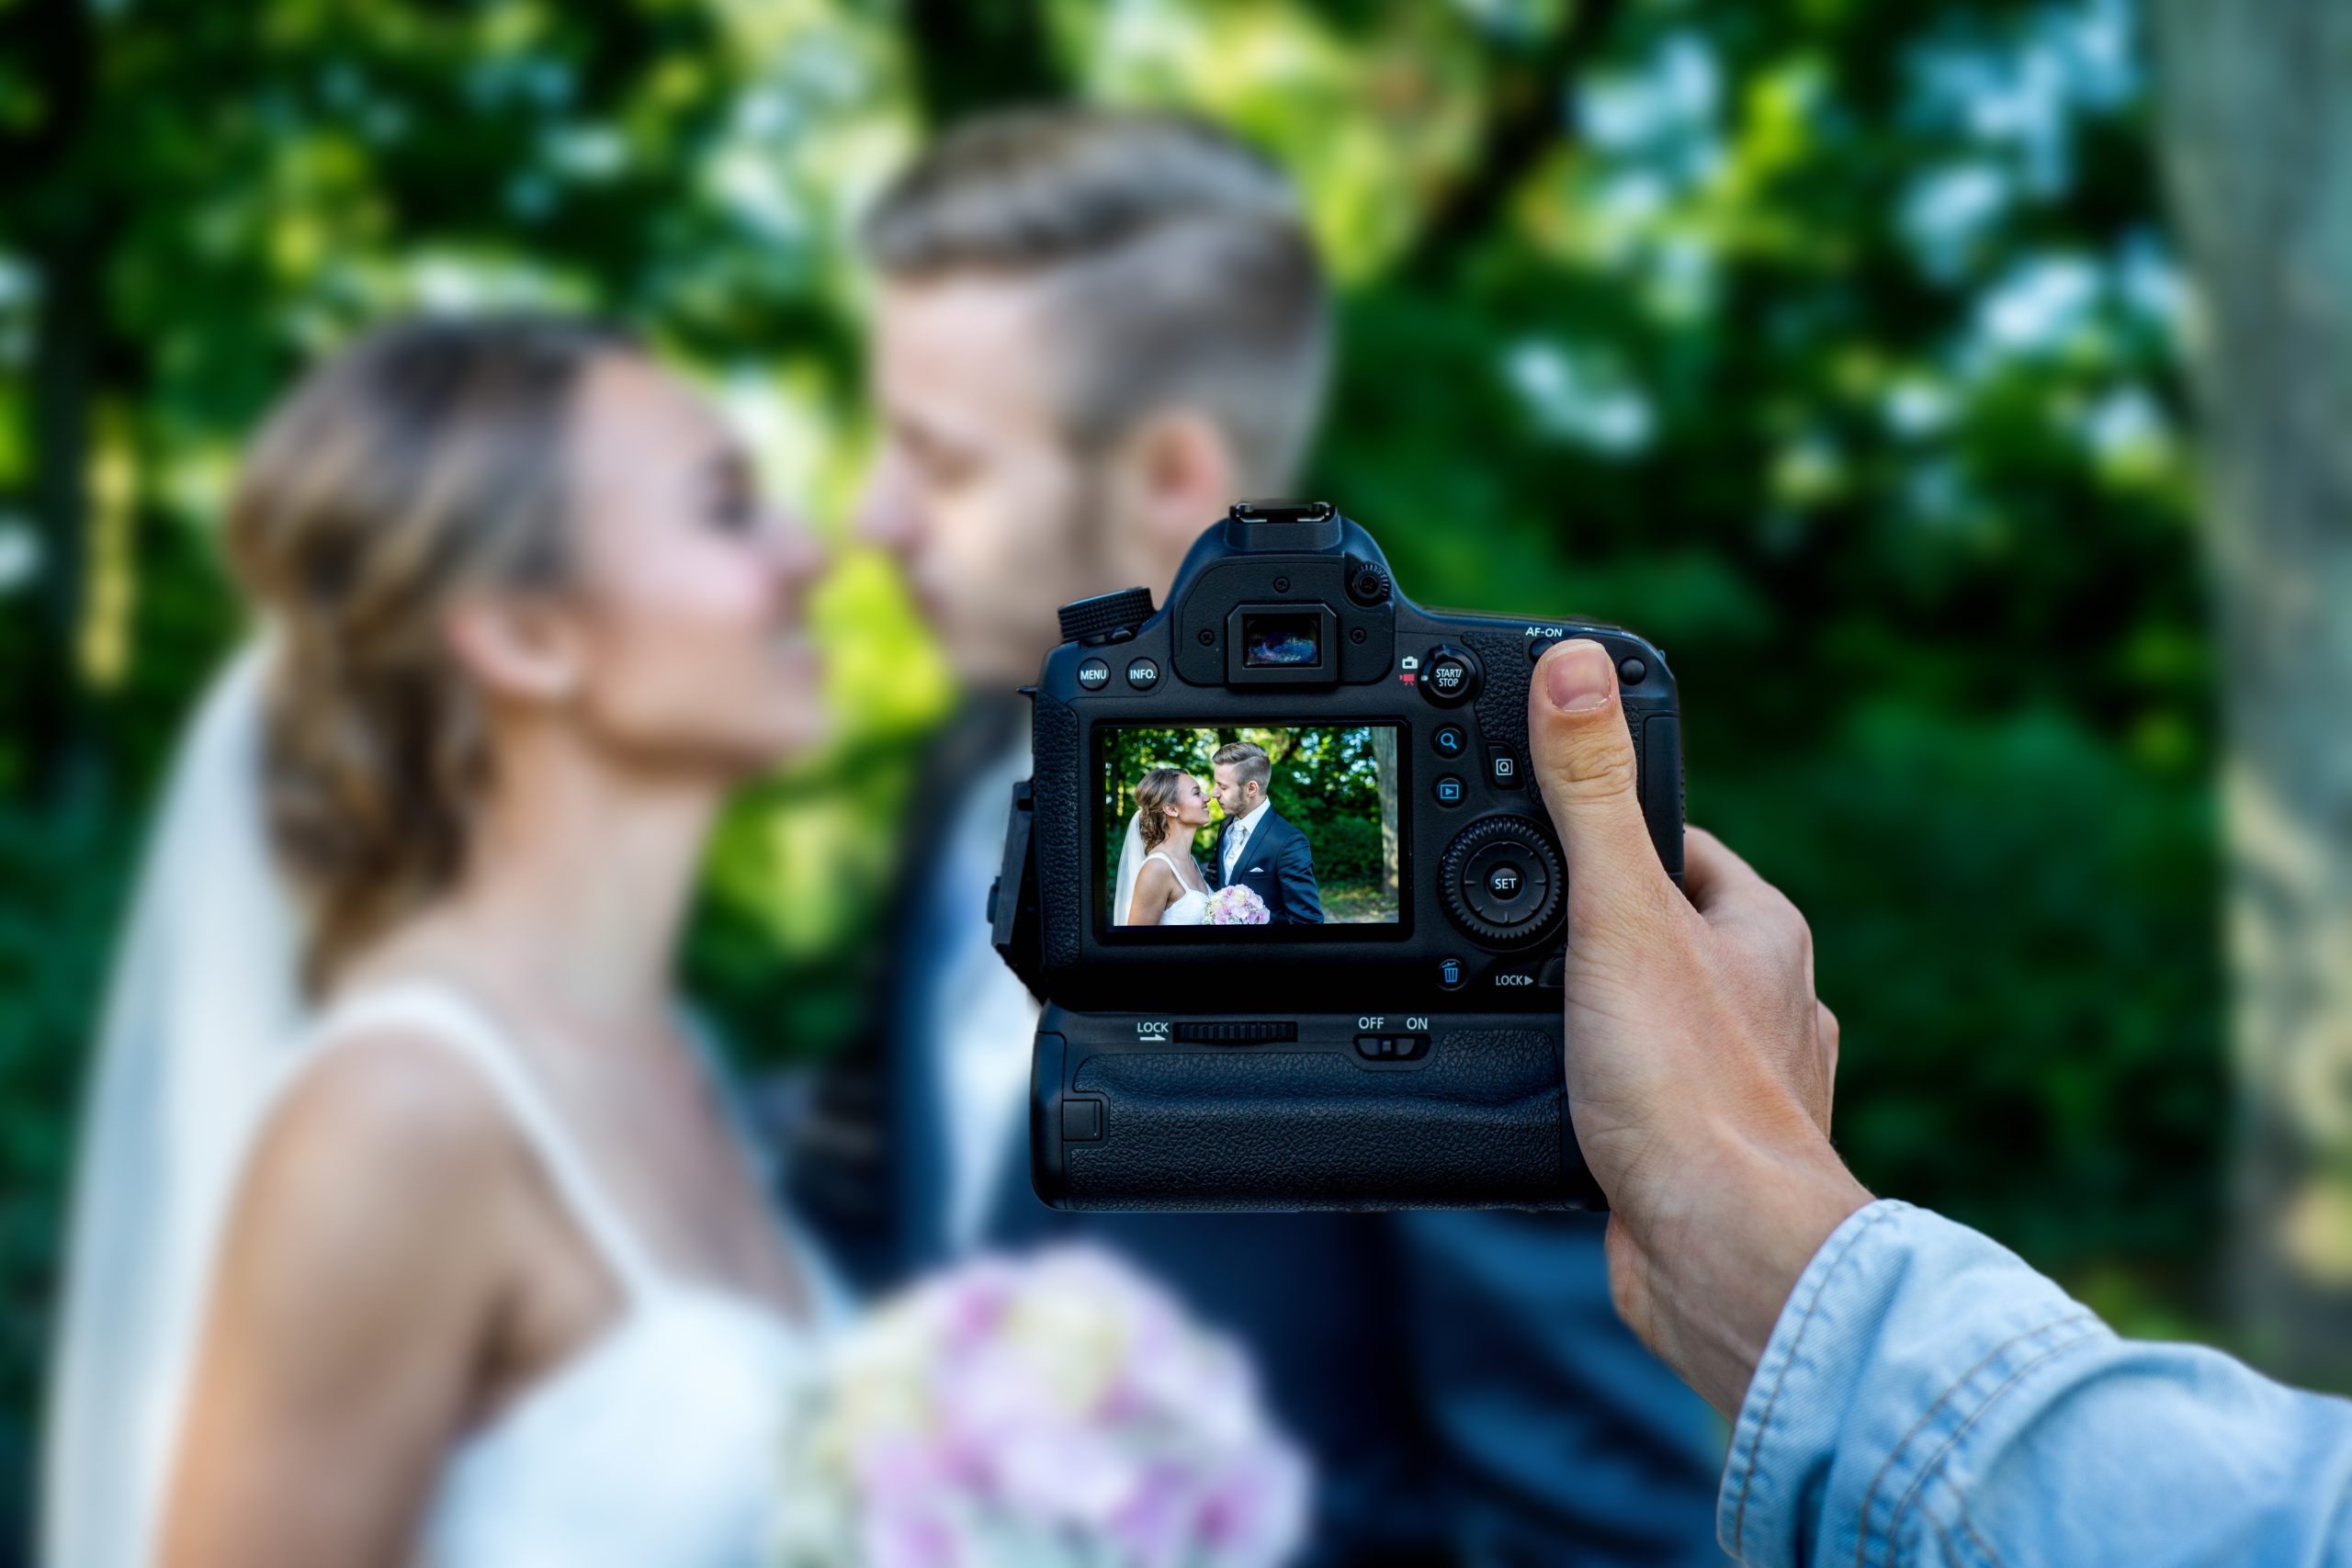 Бюджетная свадьба: как недорого и красиво организовать свадьбу